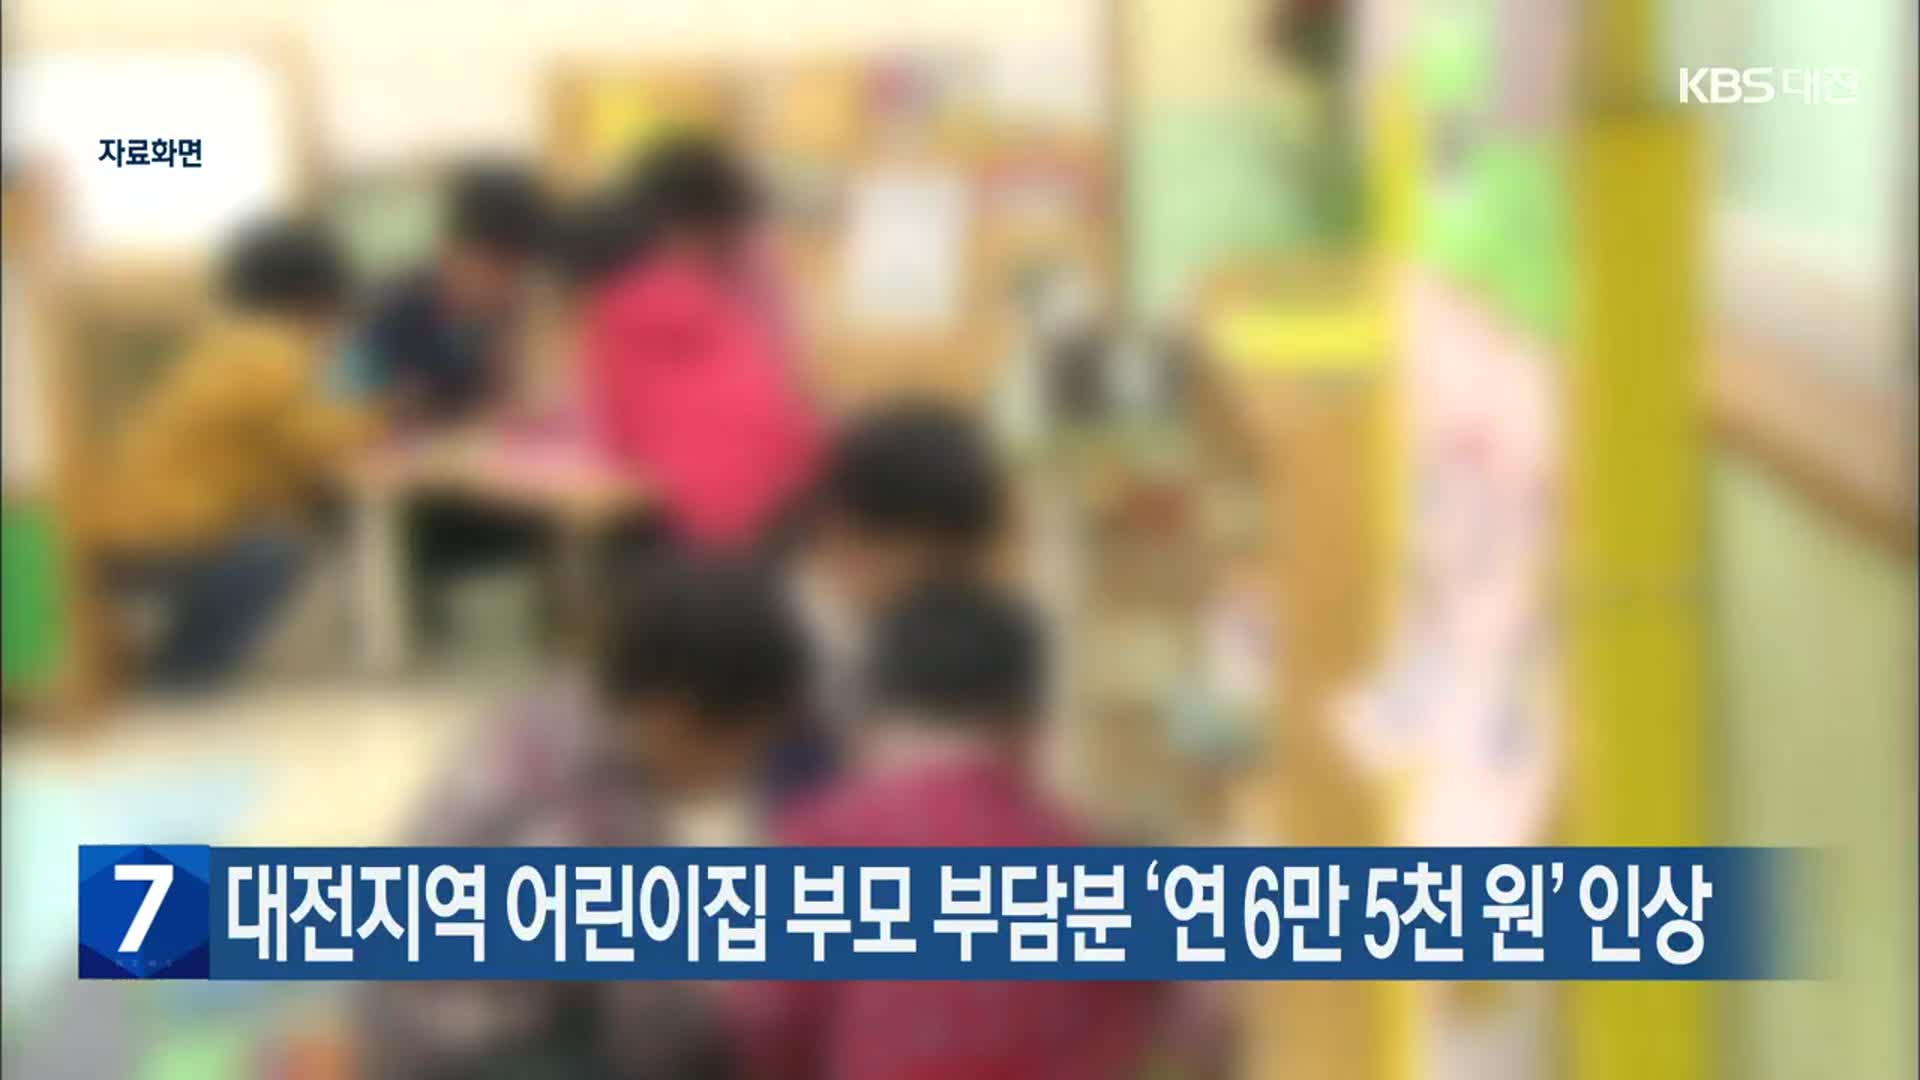 대전지역 어린이집 부모 부담분 ‘연 6만 5천 원’ 인상